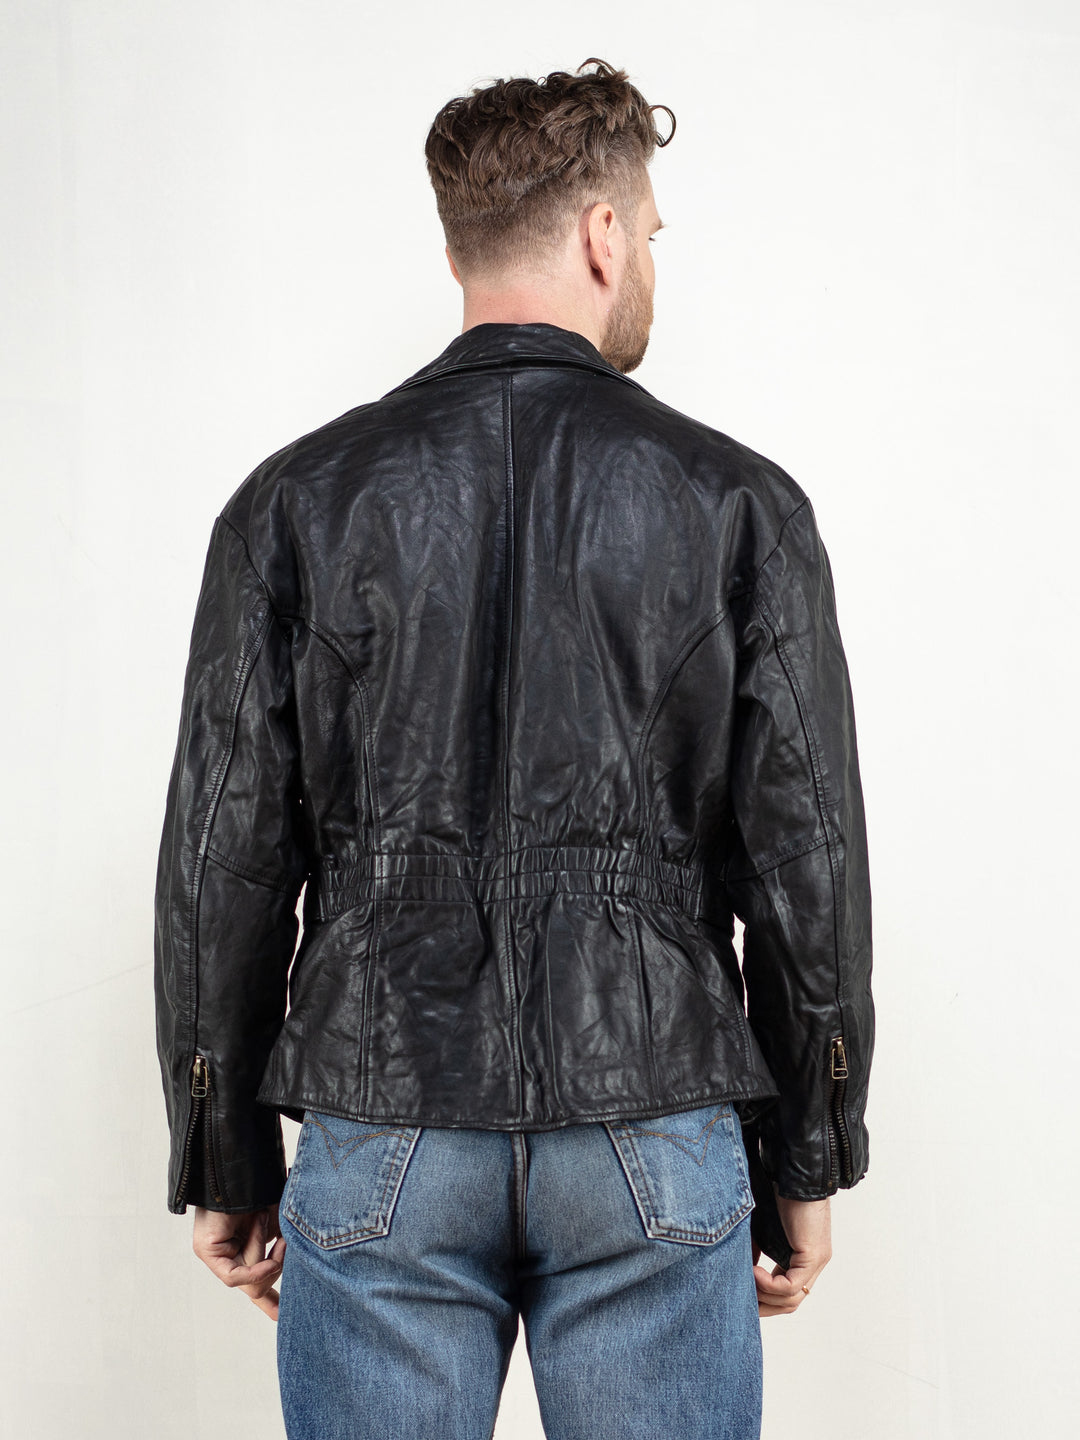 Vintage 90's Leather Biker Jacket